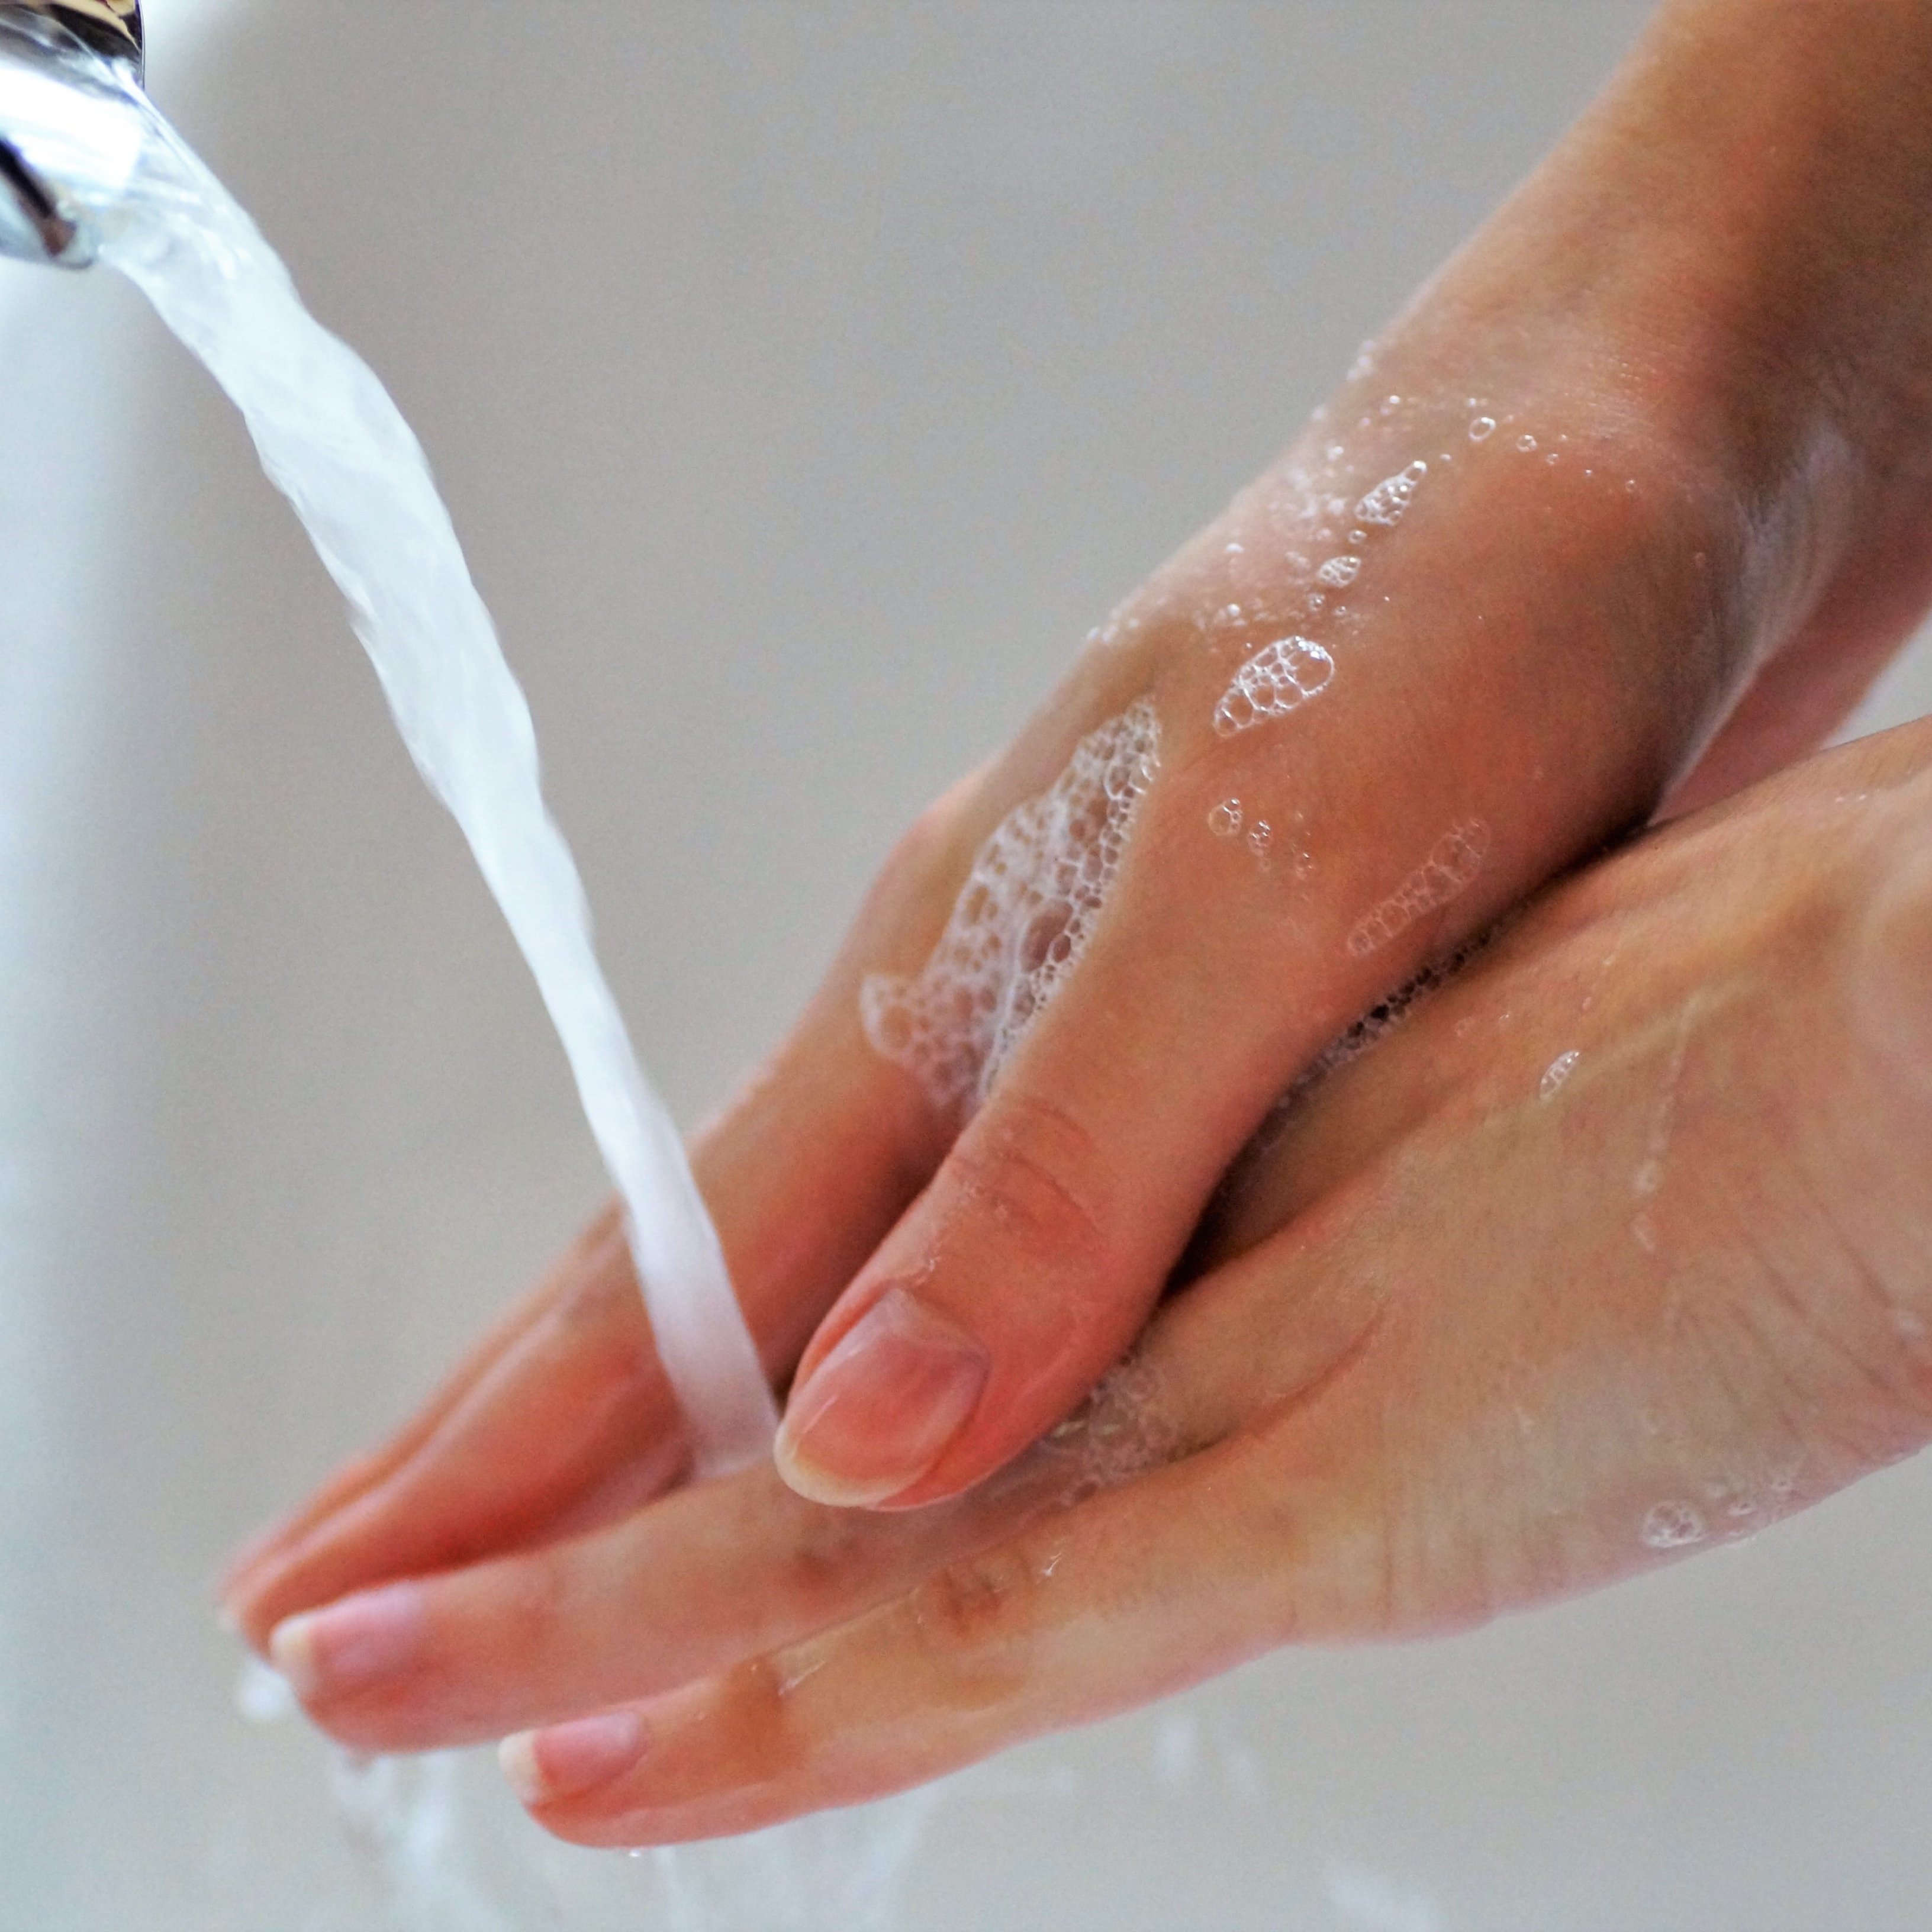 Mejor secarse las manos con papel para evitar el contagio por coronavirus